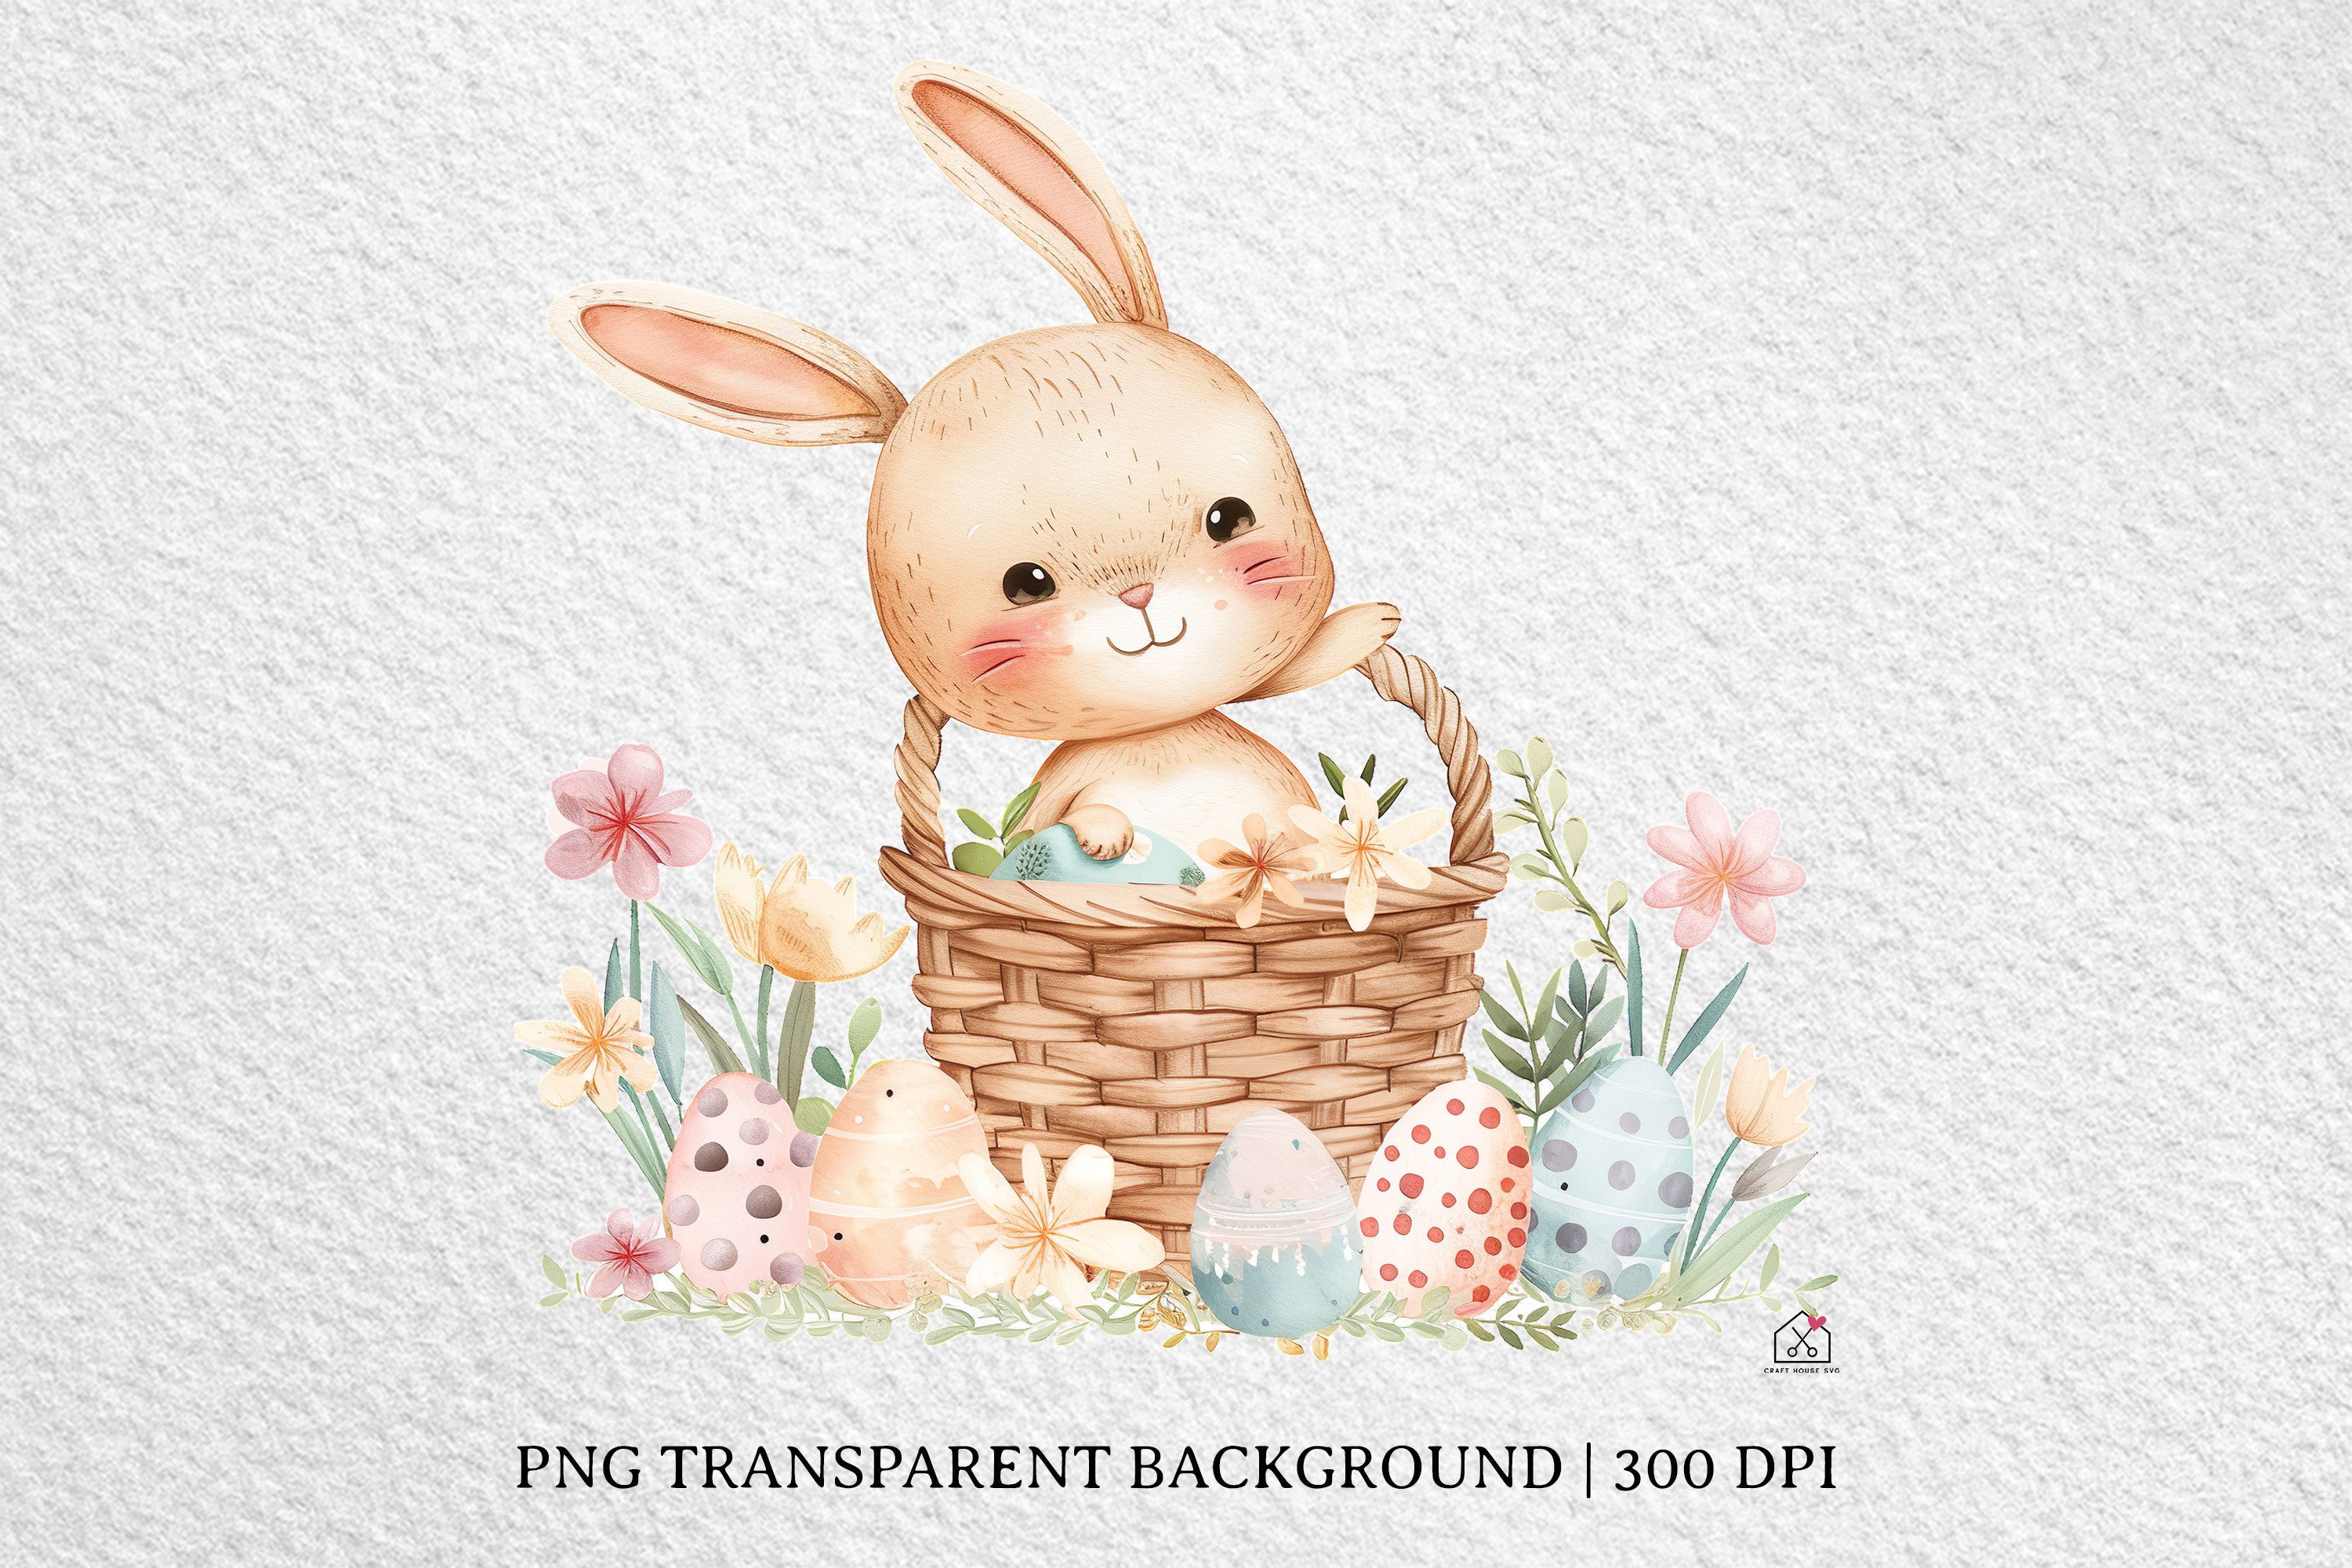 Watercolor Easter Basket Sublimation Bundle Clip Art PNG